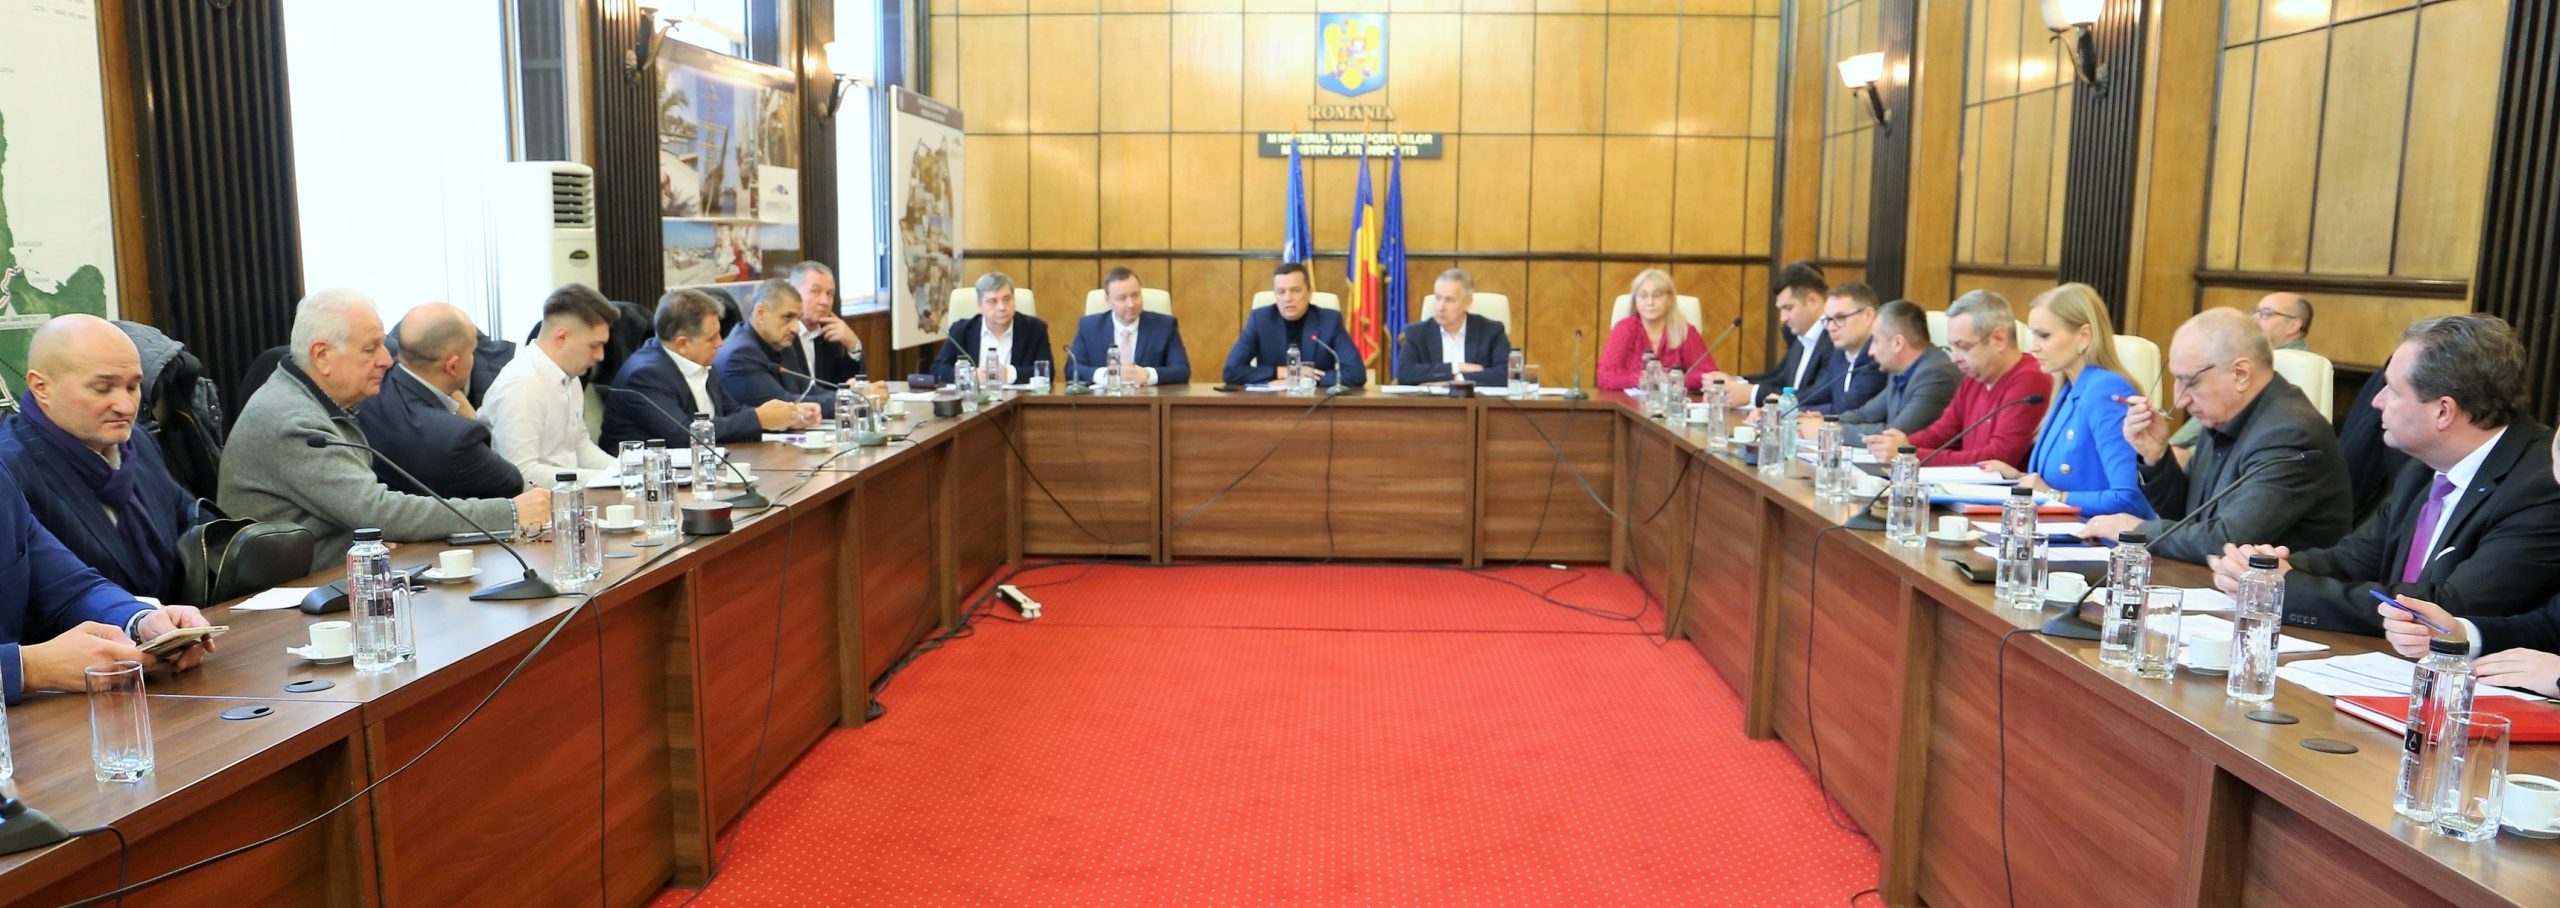 Ministrul Sorin Grindeanu, nouă întâlnire cu patronatele din transportul rutier – S-a convenit să fie supus procedurii de consultare publică proiectul de ordin pentru ajustarea tarifelor AST percepute de către CNAIR